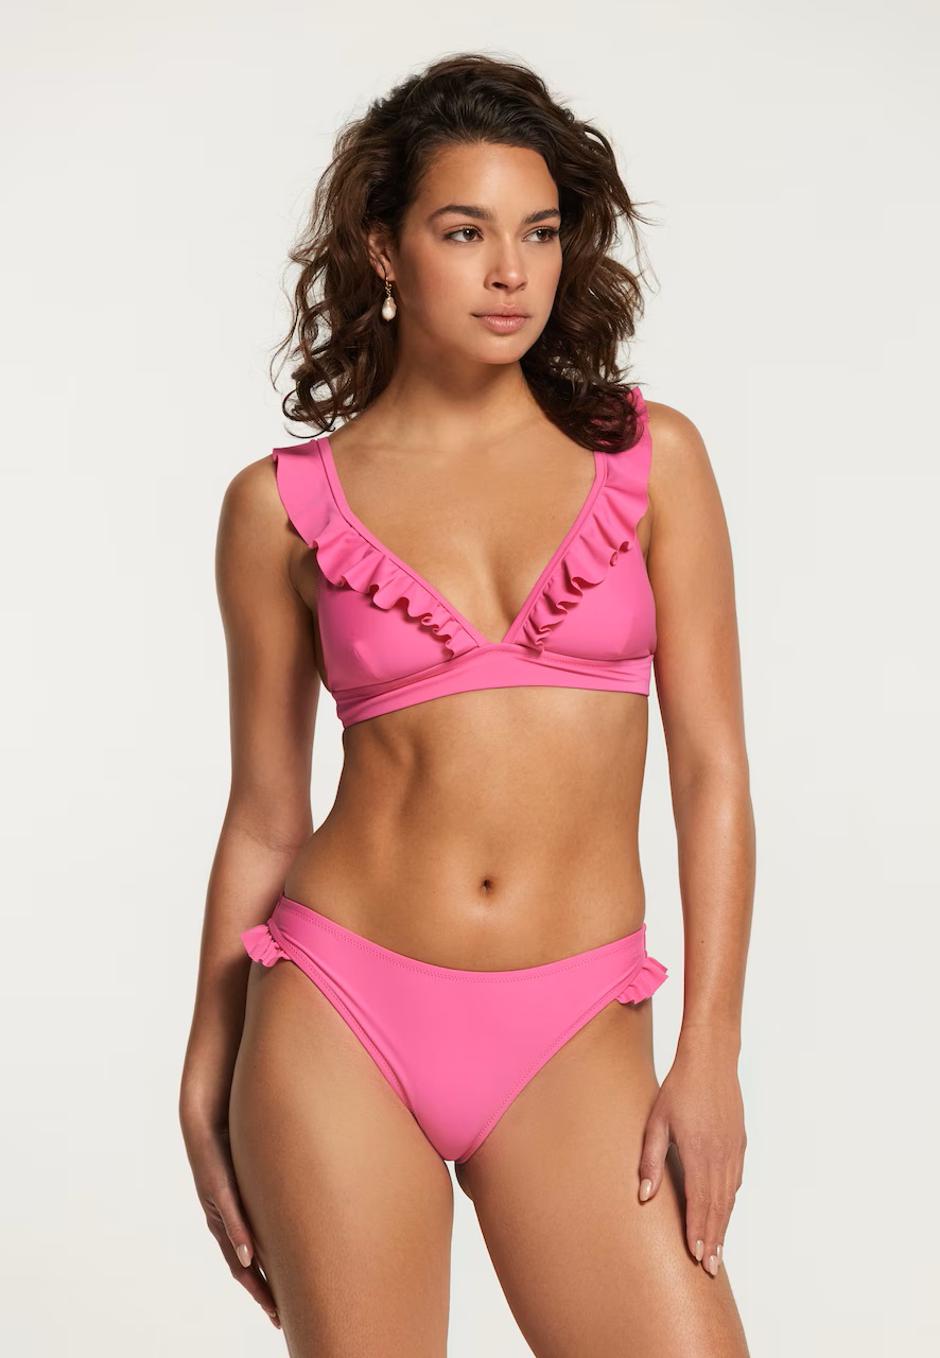 Foto: Shiwi/ About You, ružičasti kupaći kostim (59,99 eura) | Autor: 